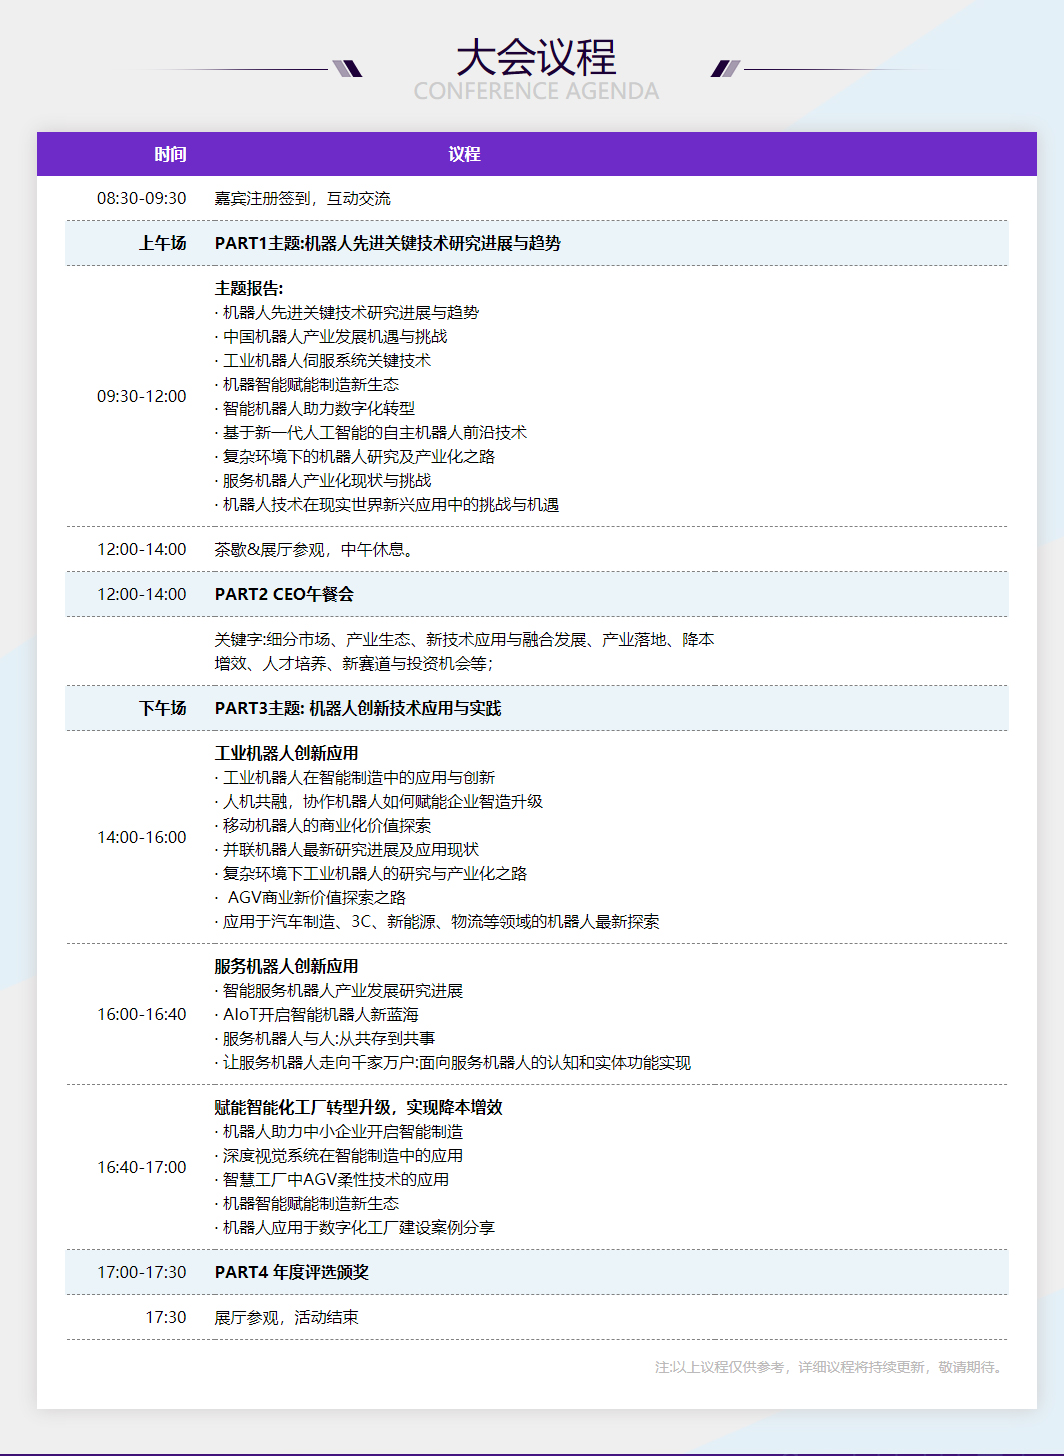 2022机器人大会-OFweek2022(第十一届)中国机器人产业大会_03.jpg